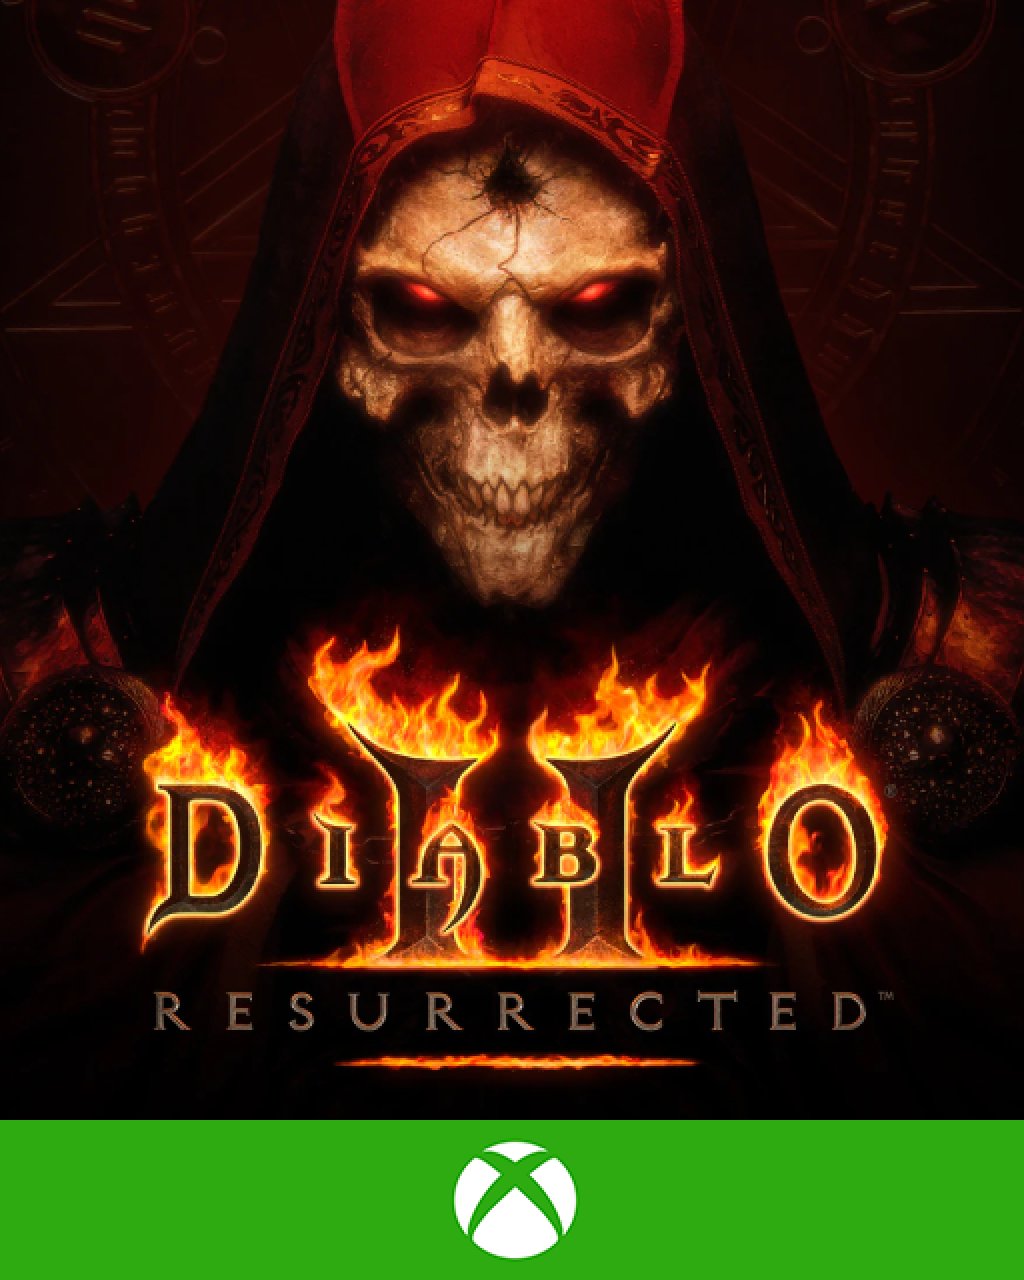 ESD Diablo II Resurrected Xbox